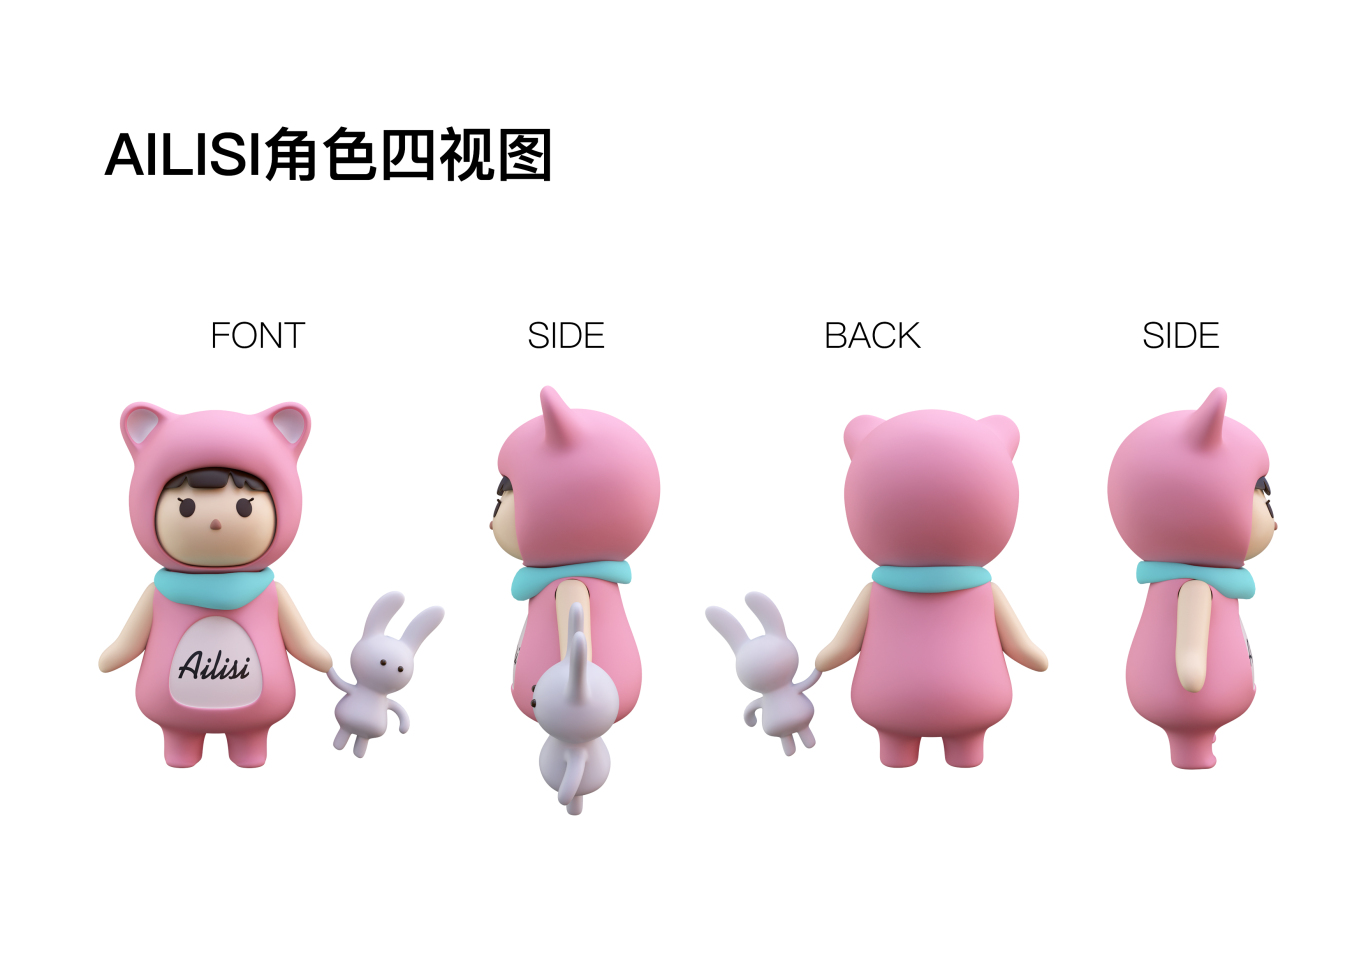 武汉ailisi文化公司吉祥物形象设计图1